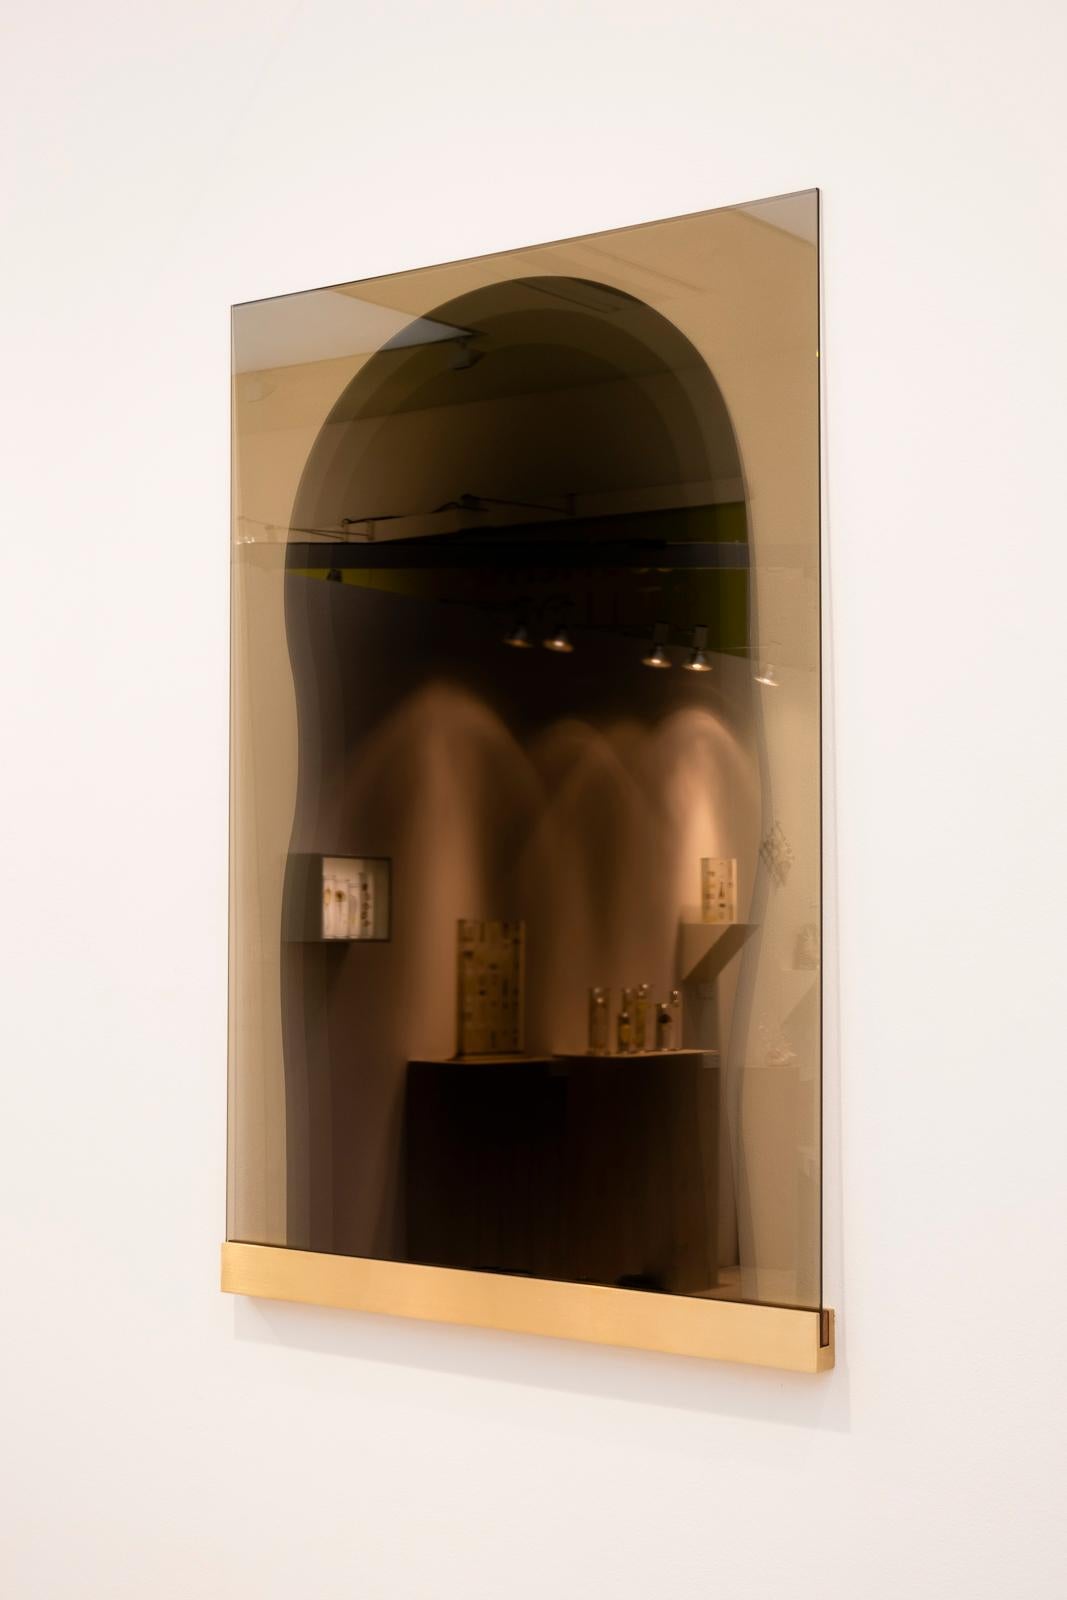 Einzigartiger Spiegel aus Holz von Kim Thome
Abmessungen: Benutzerdefiniert
MATERIALIEN: Glas, reflektierende Architekturfolie

Kim Thomé ist ein norwegischer Designer, der in London lebt.